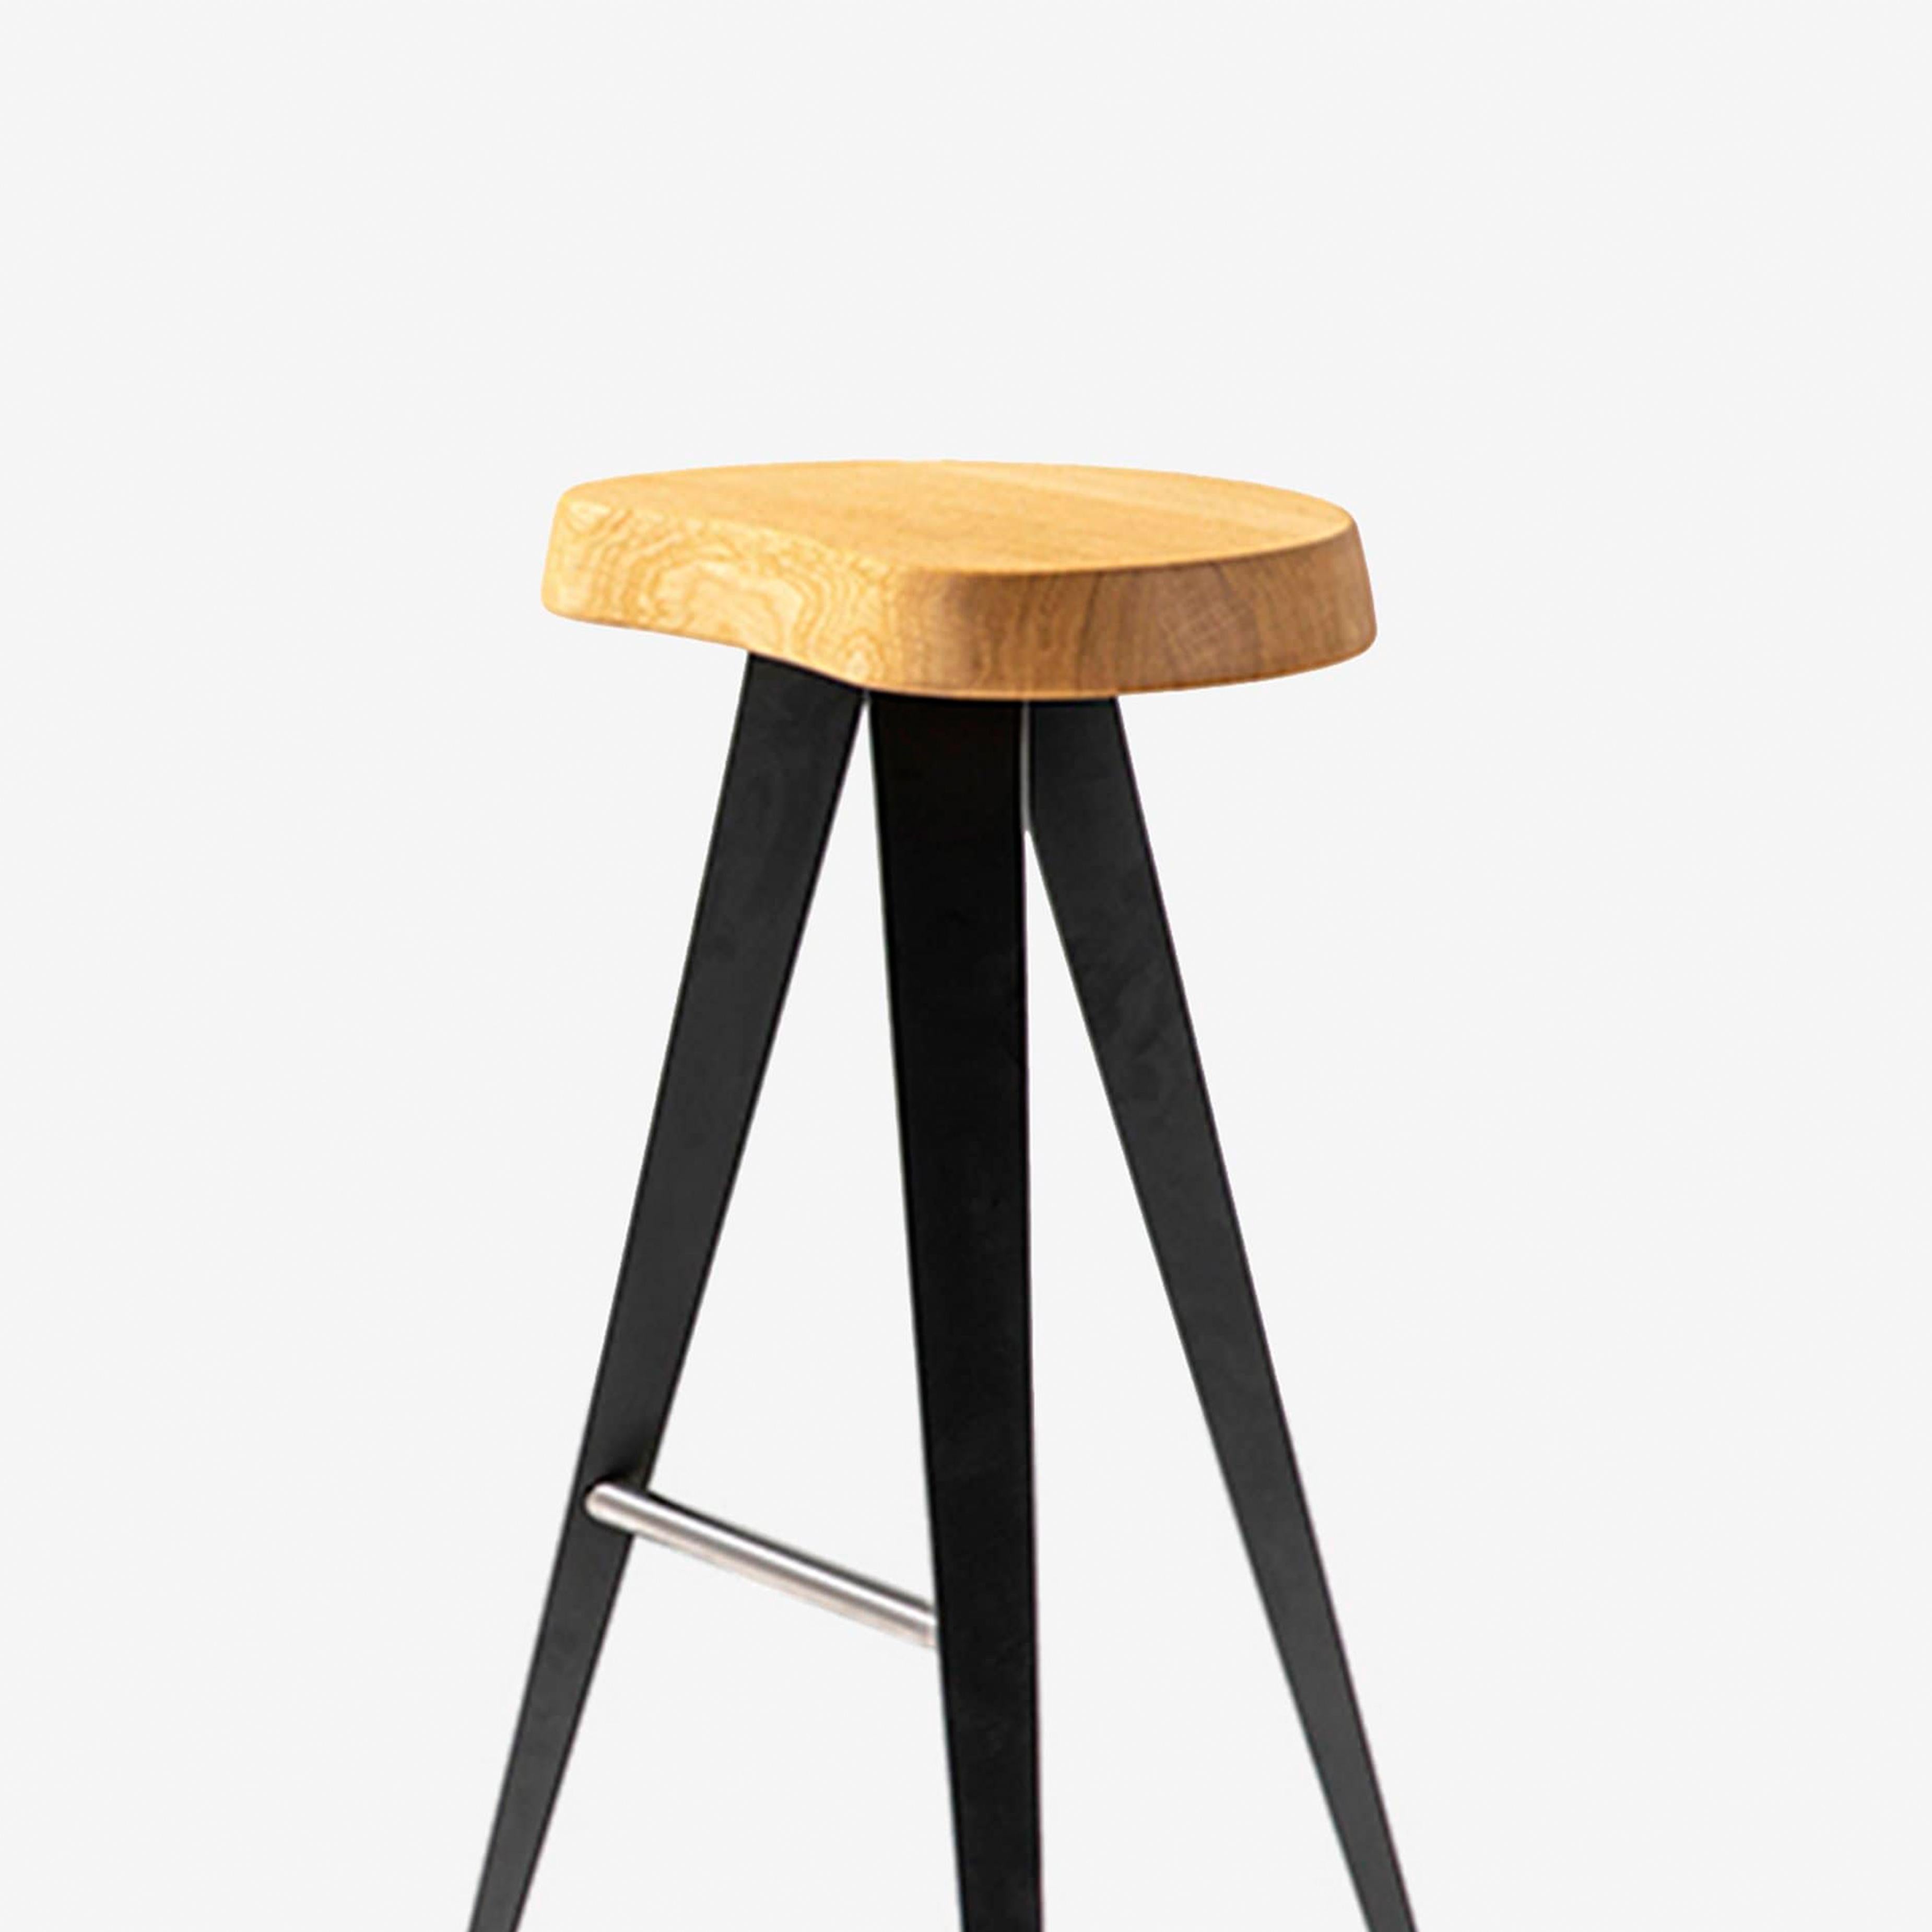 Ce tabouret de la famille Mexique, mesure 72 cm de haut. La chaise de forme libre, en bois massif, est mise en valeur par la légèreté de la structure géométrique des pieds en métal avec une finition noire mate ou gunmetal brillant.

Ce tabouret